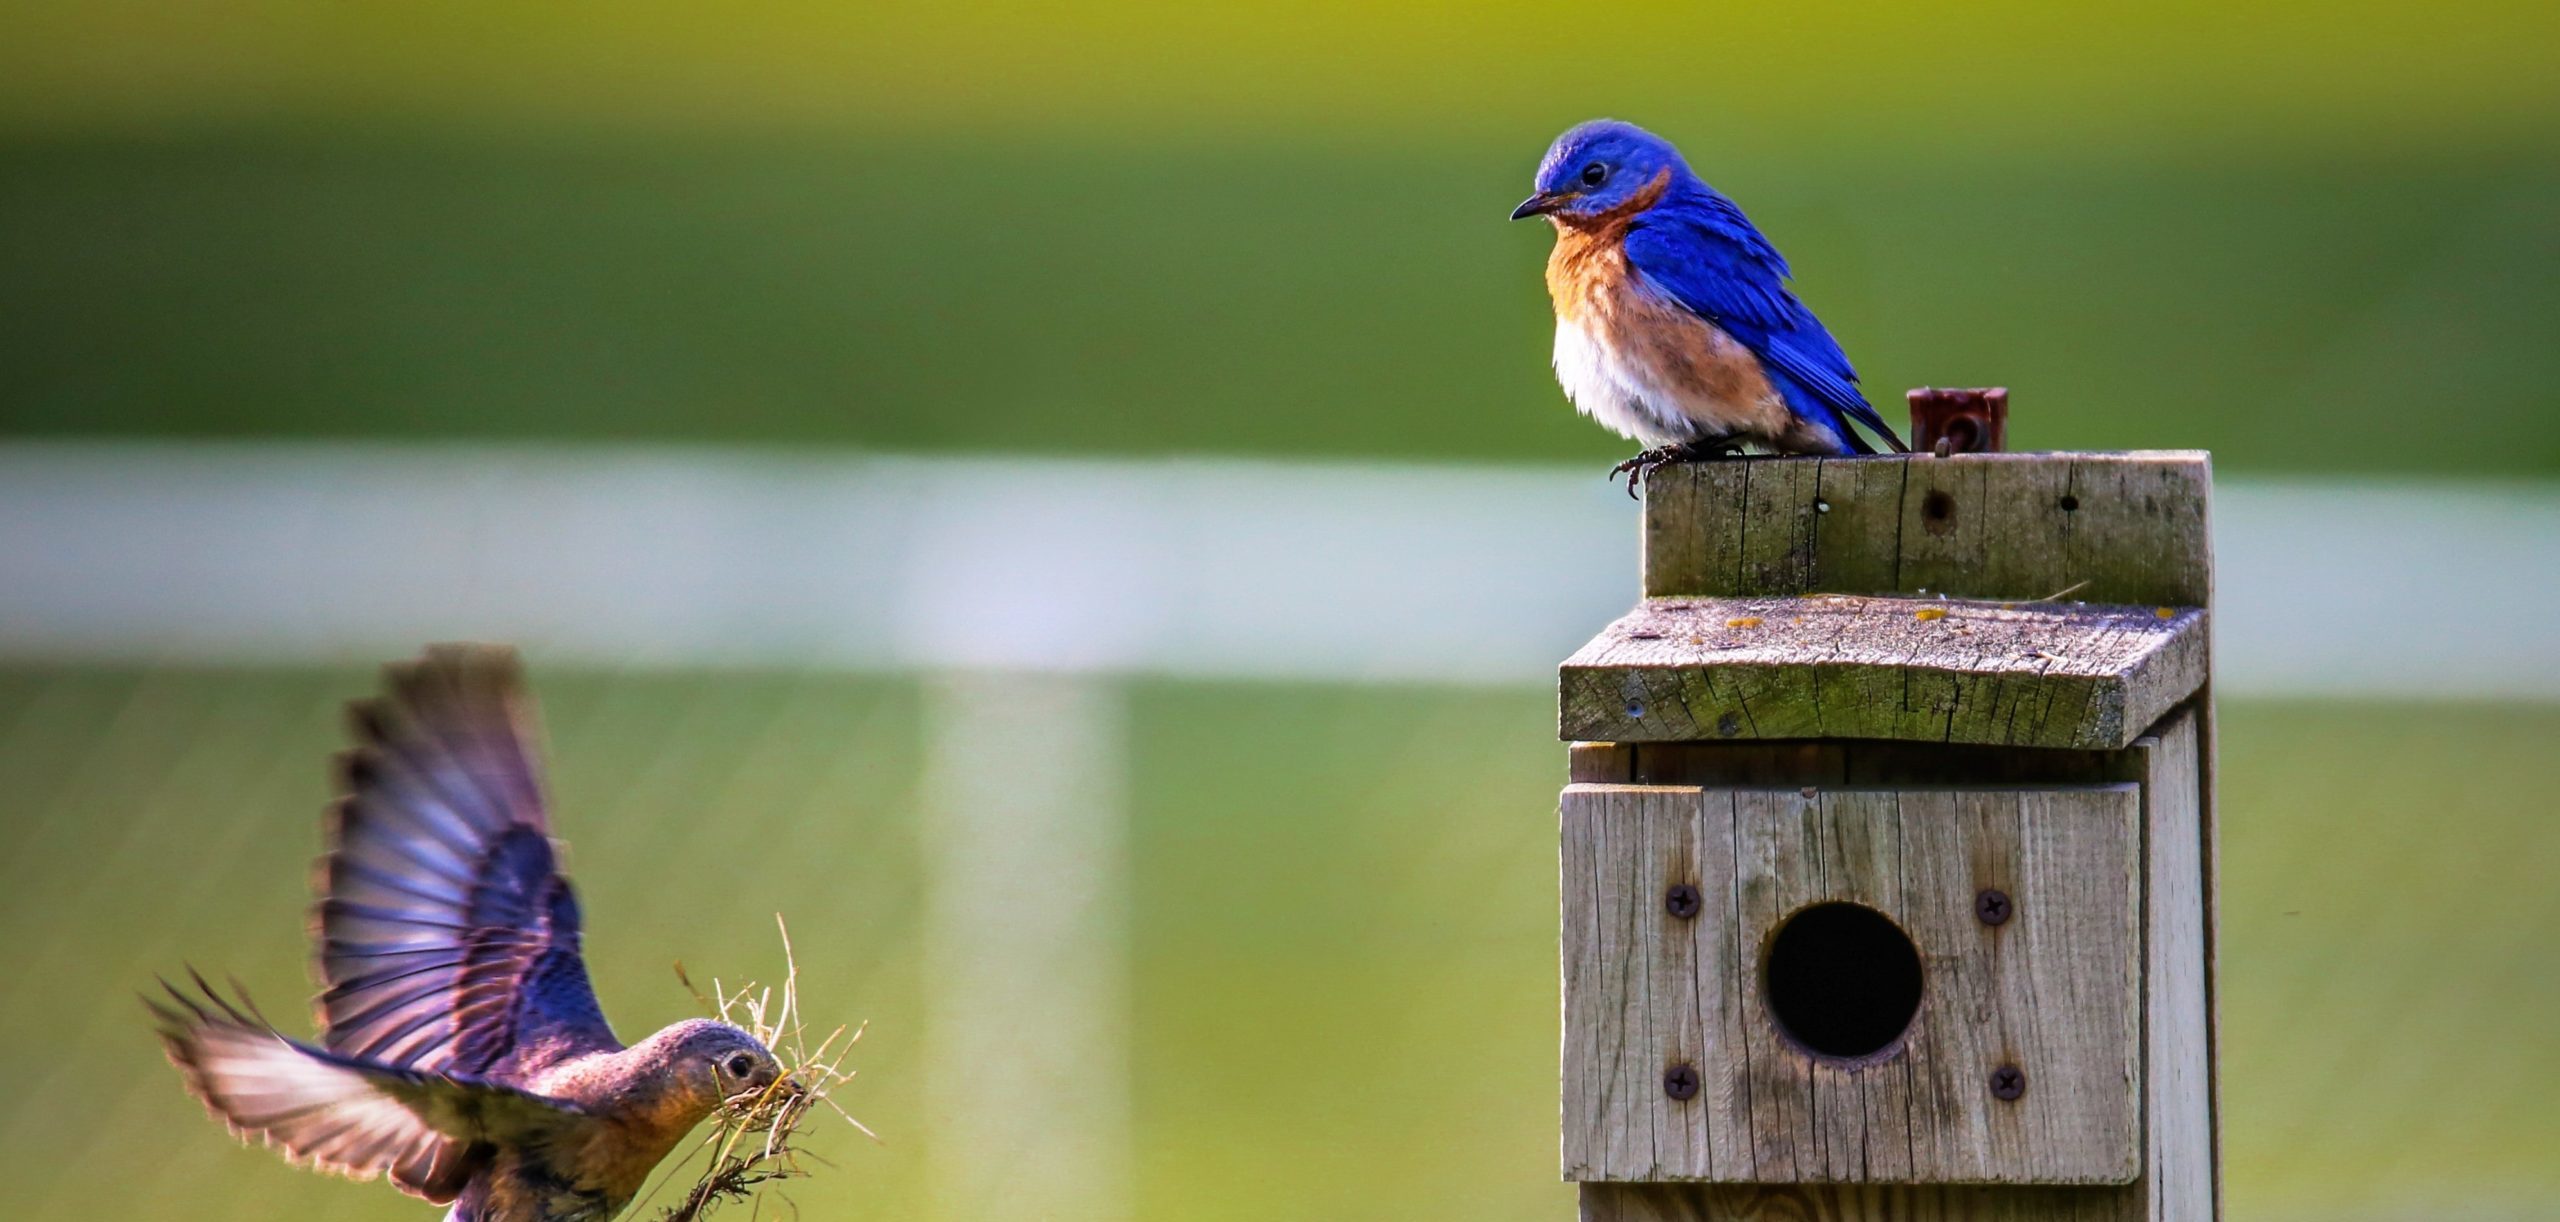 Activité écologique : construire une mangeoire à oiseaux- Blog Hydrao